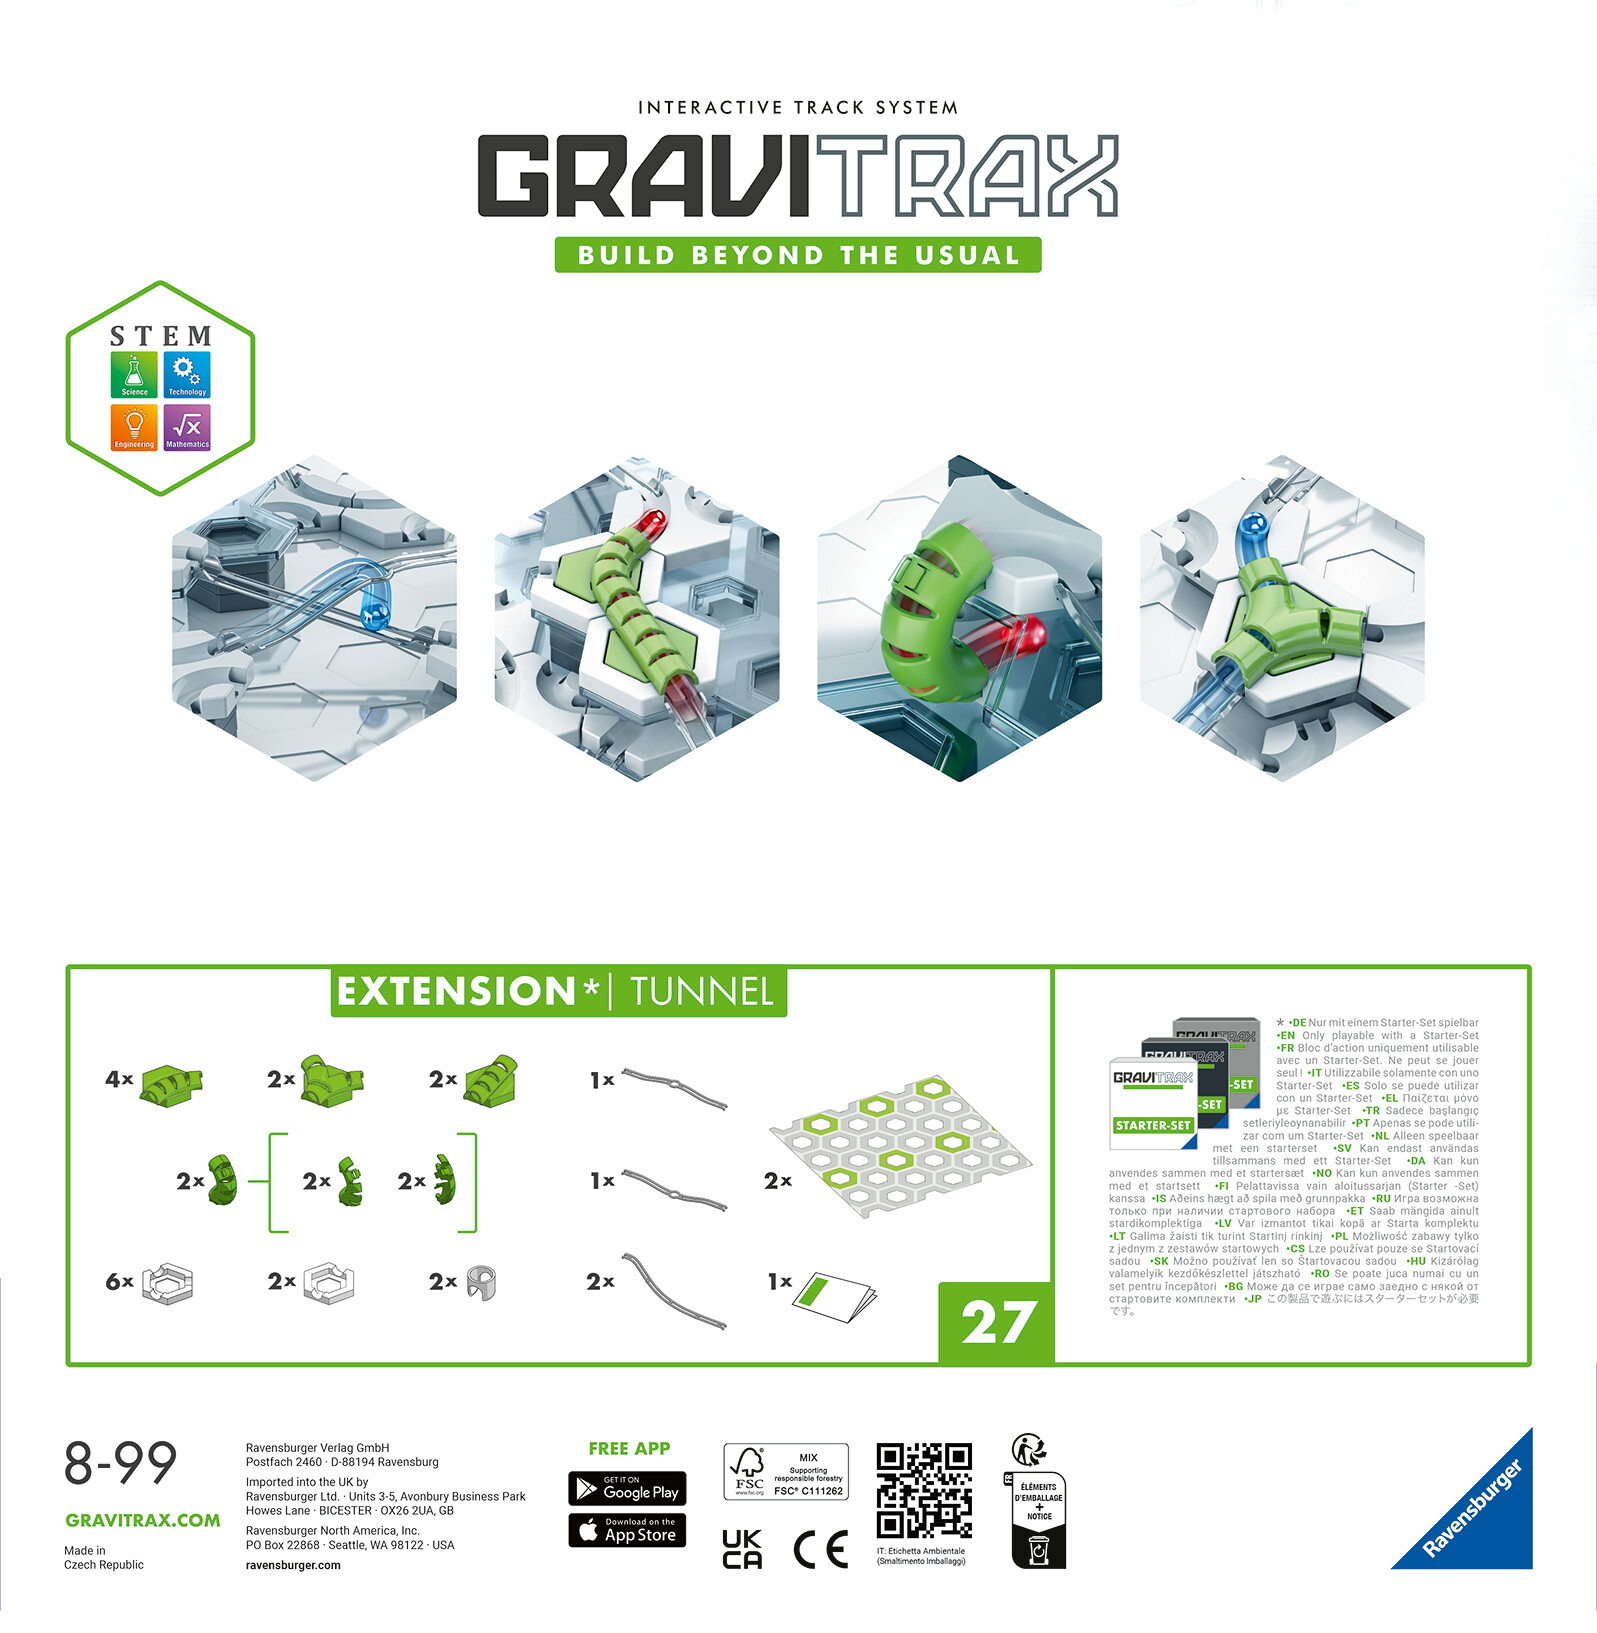 Ravensburger gravitrax tunnel, gioco innovativo ed educativo stem, 8+ anni, accessorio - GRAVITRAX